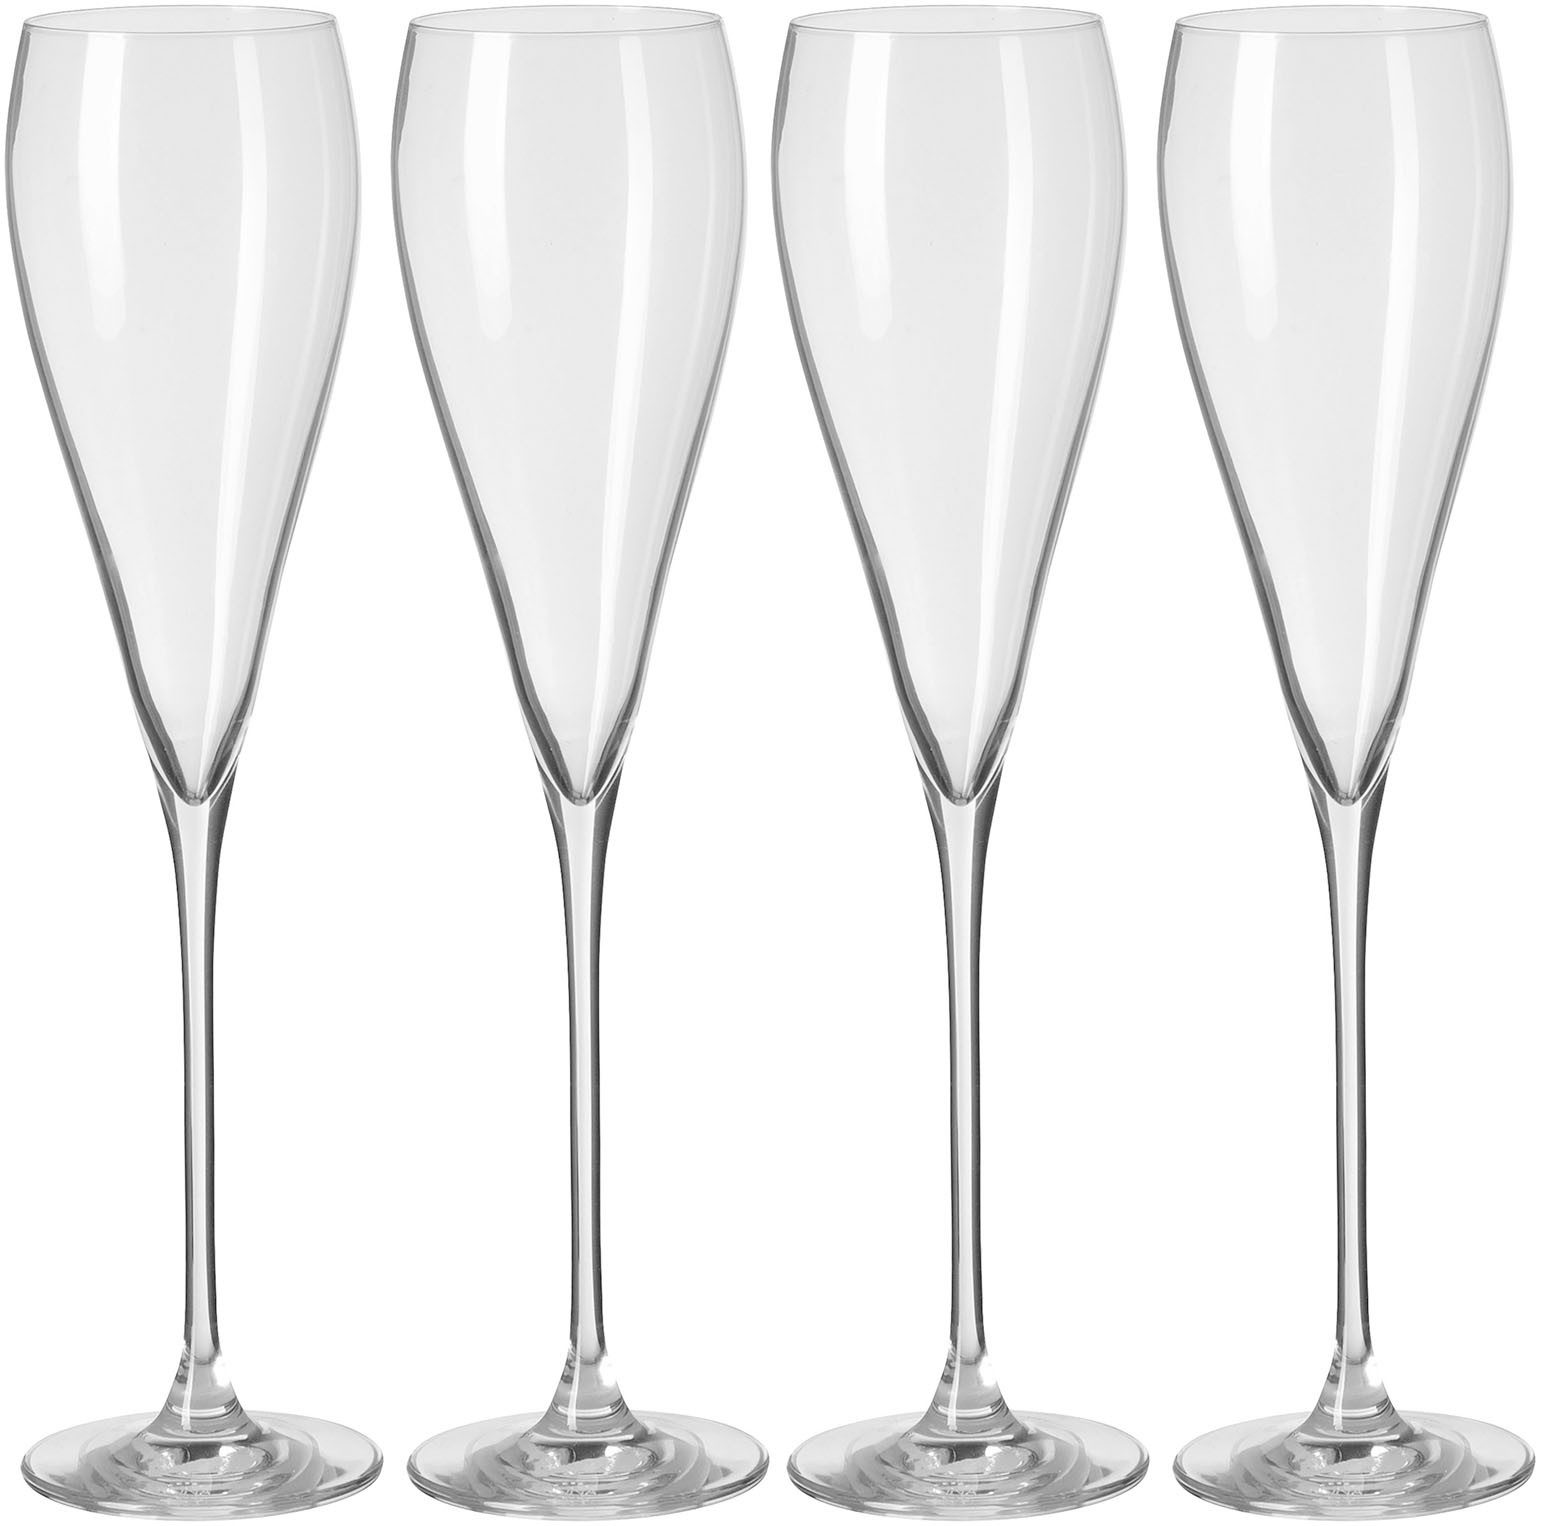 Fink Champagnerglas PREMIO, Glas, Sektglas, Champagnerflöte, 4er Set, transparent